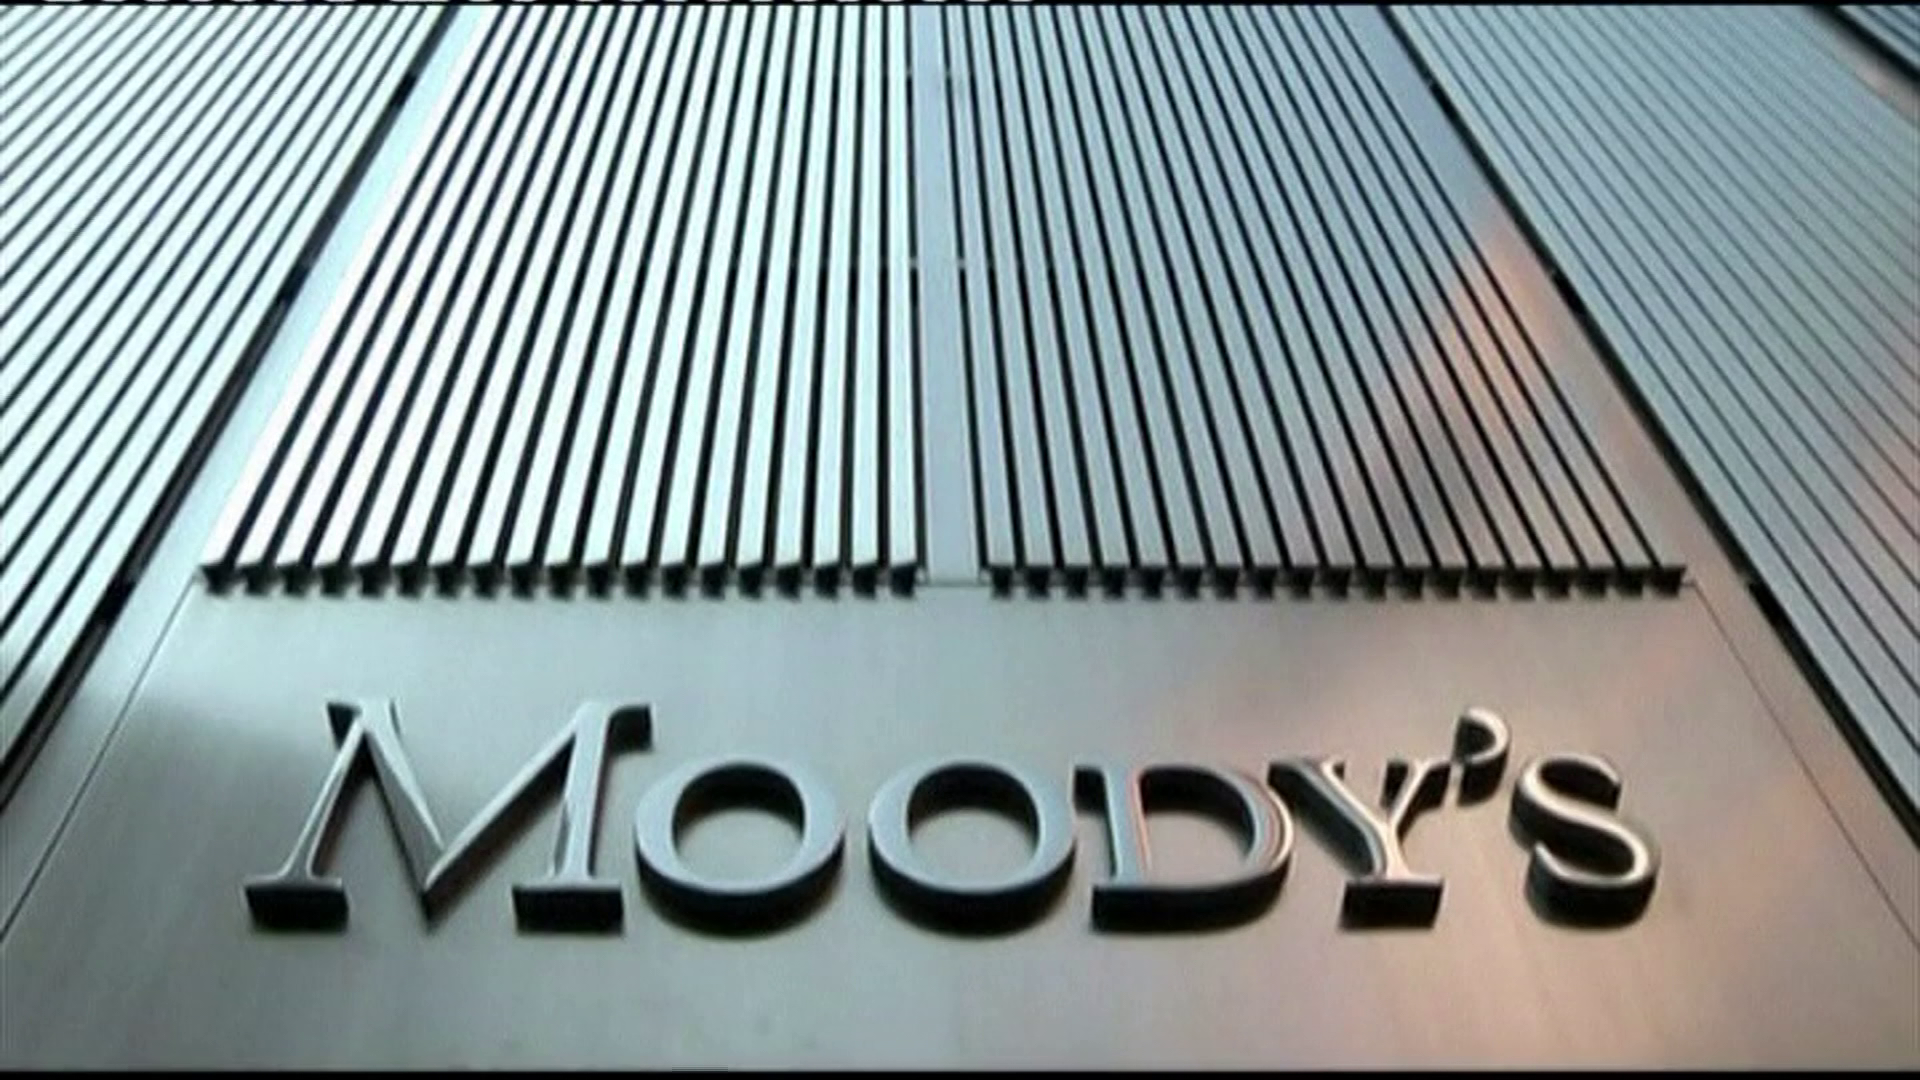 Felminősítette Magyarországot a Moody's 